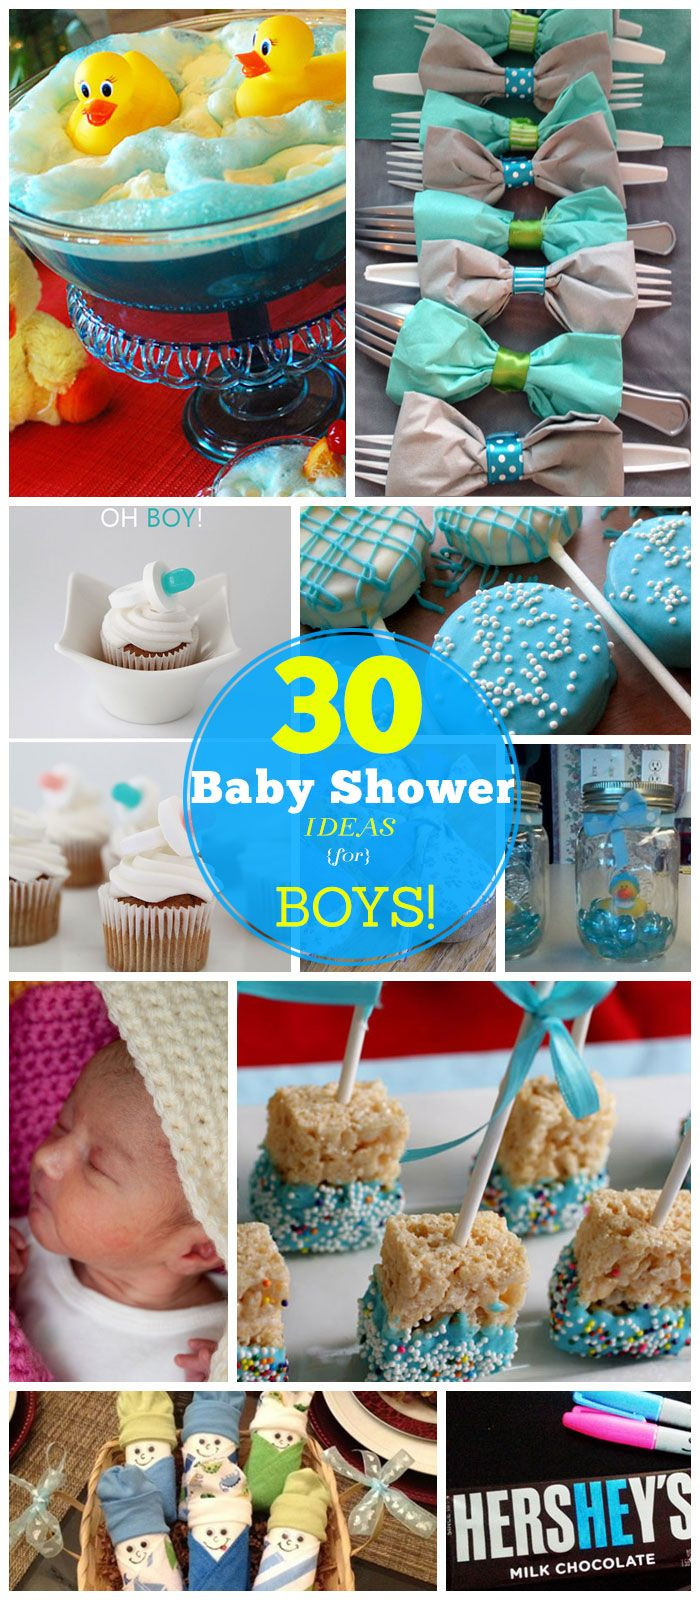 DIY Baby Shower Ideas For A Boy
 20 DIY Baby Shower Ideas for Boys